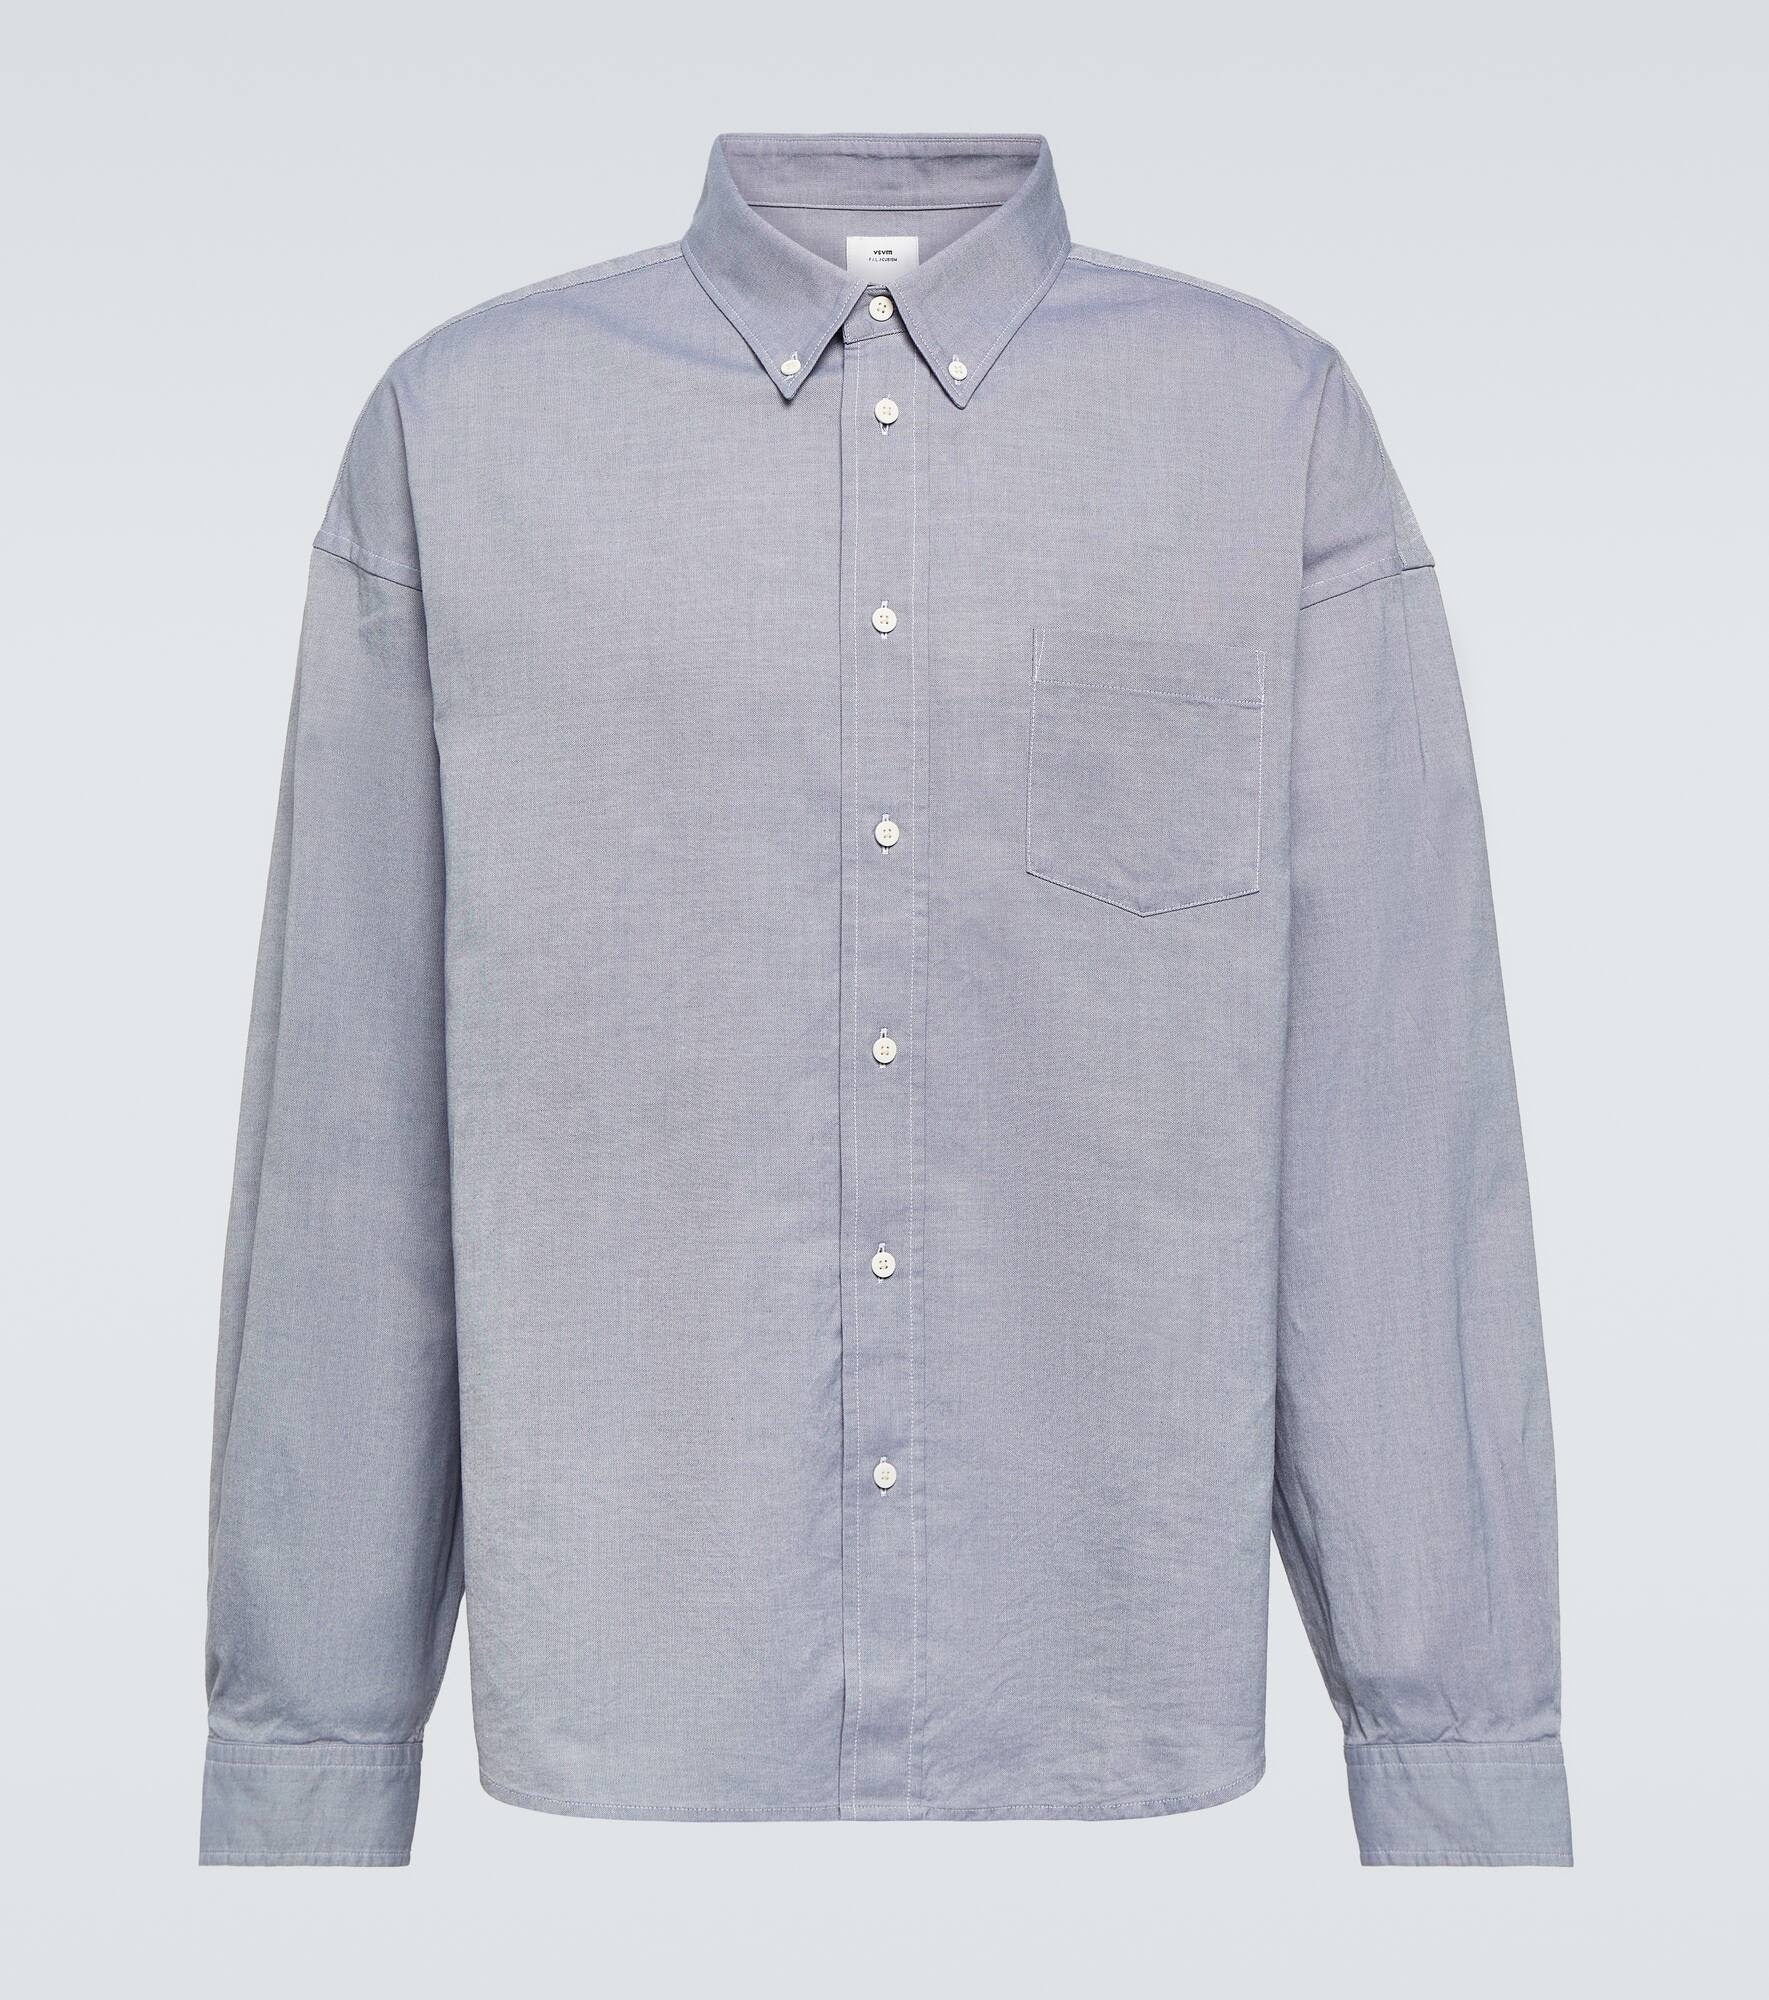 Cotton Oxford shirt - 1